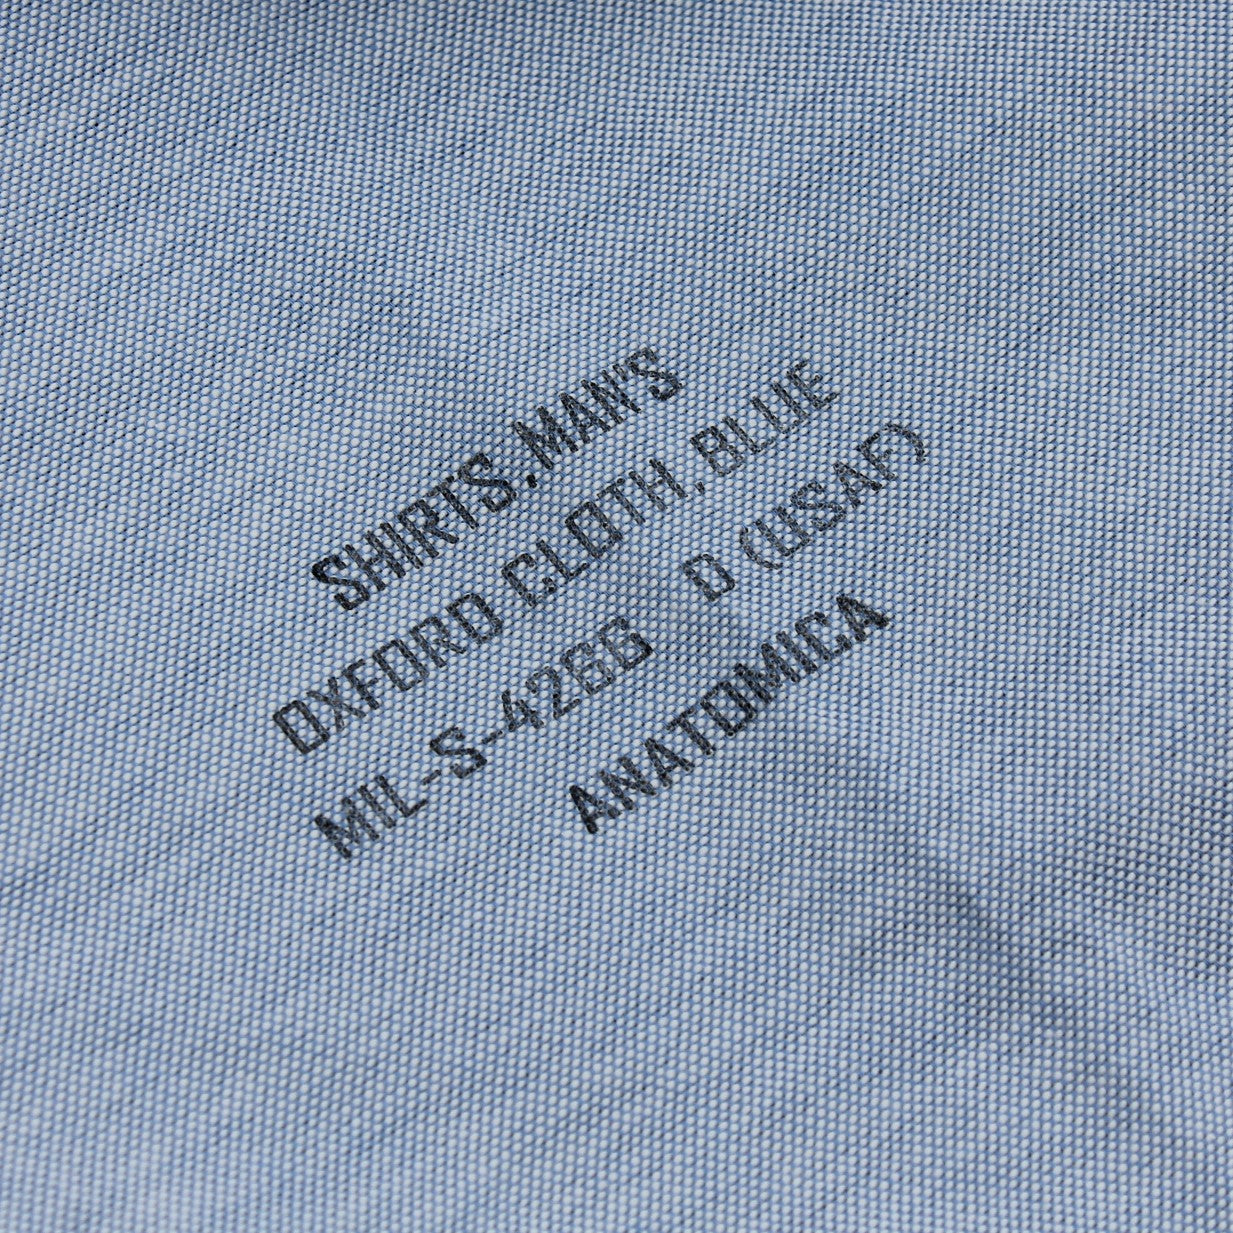 Chemises d'Oxford de l'Air Force américaine